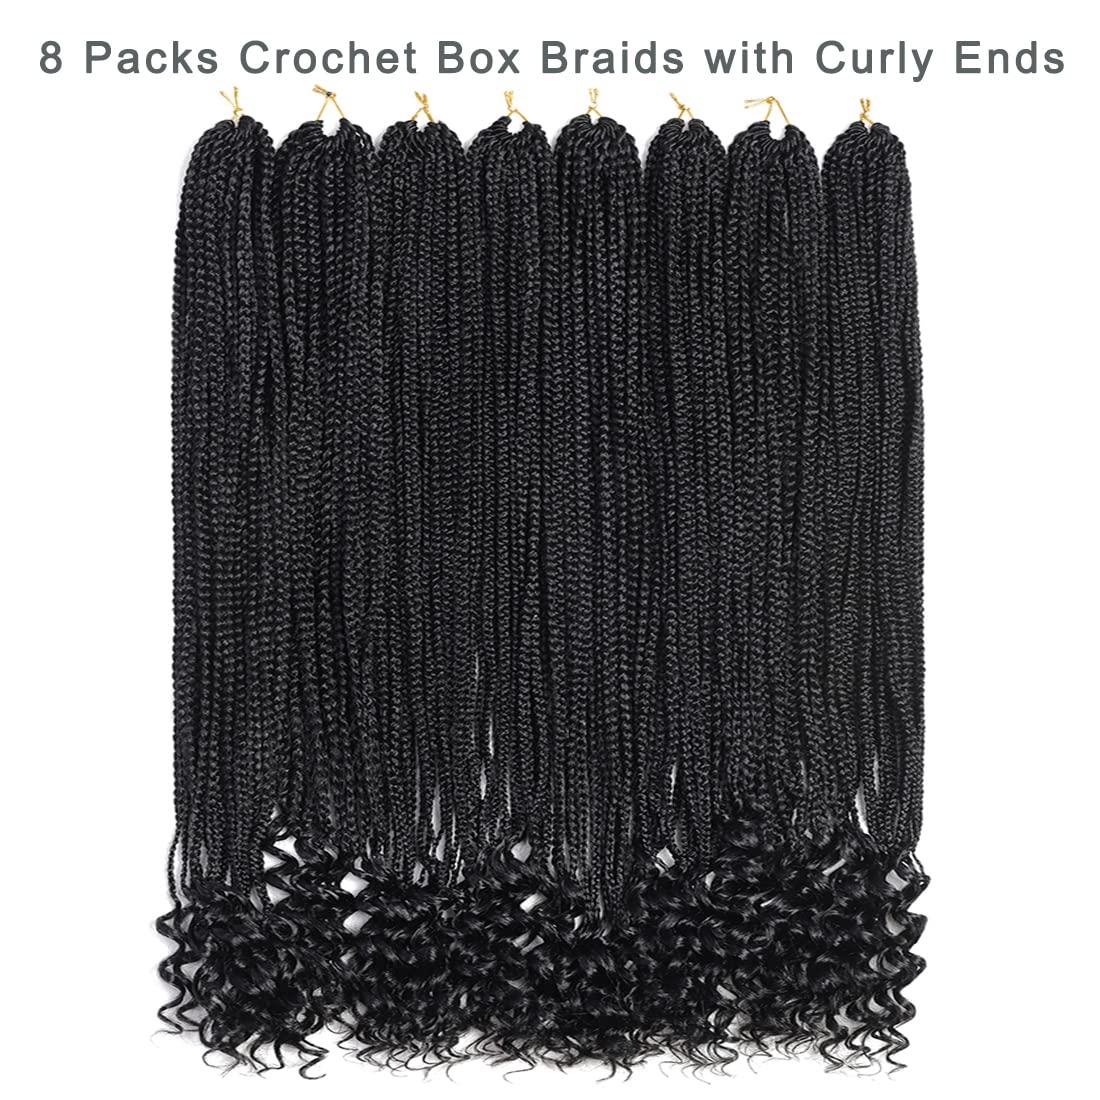 Crochet hair box braids